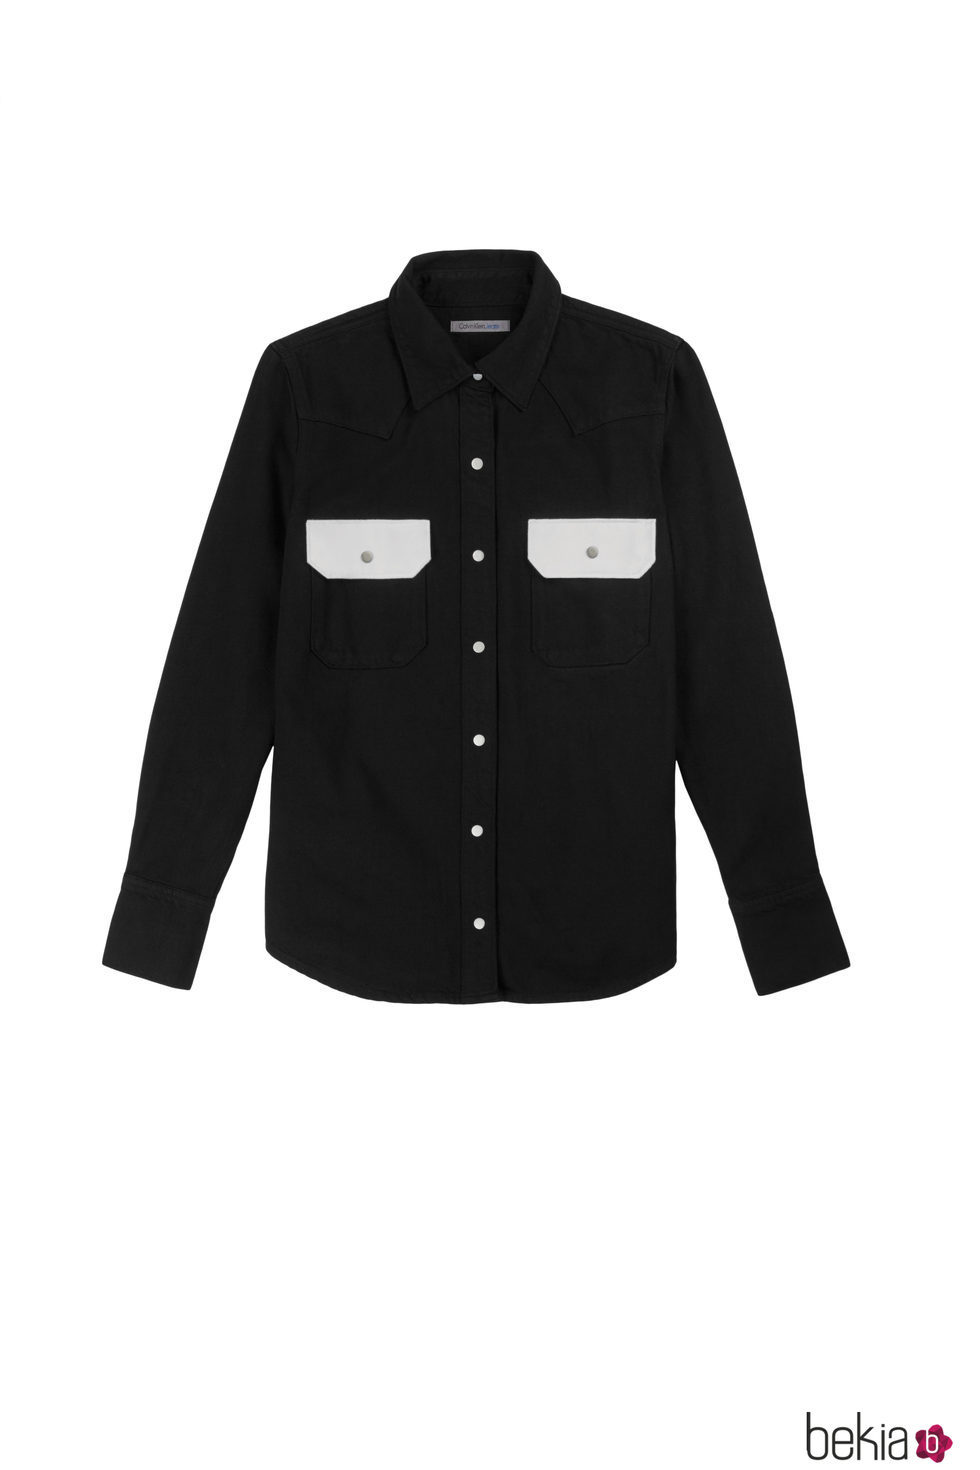 Camisa negra femenina de Calvin Klein de la colección primavera jeans 2018